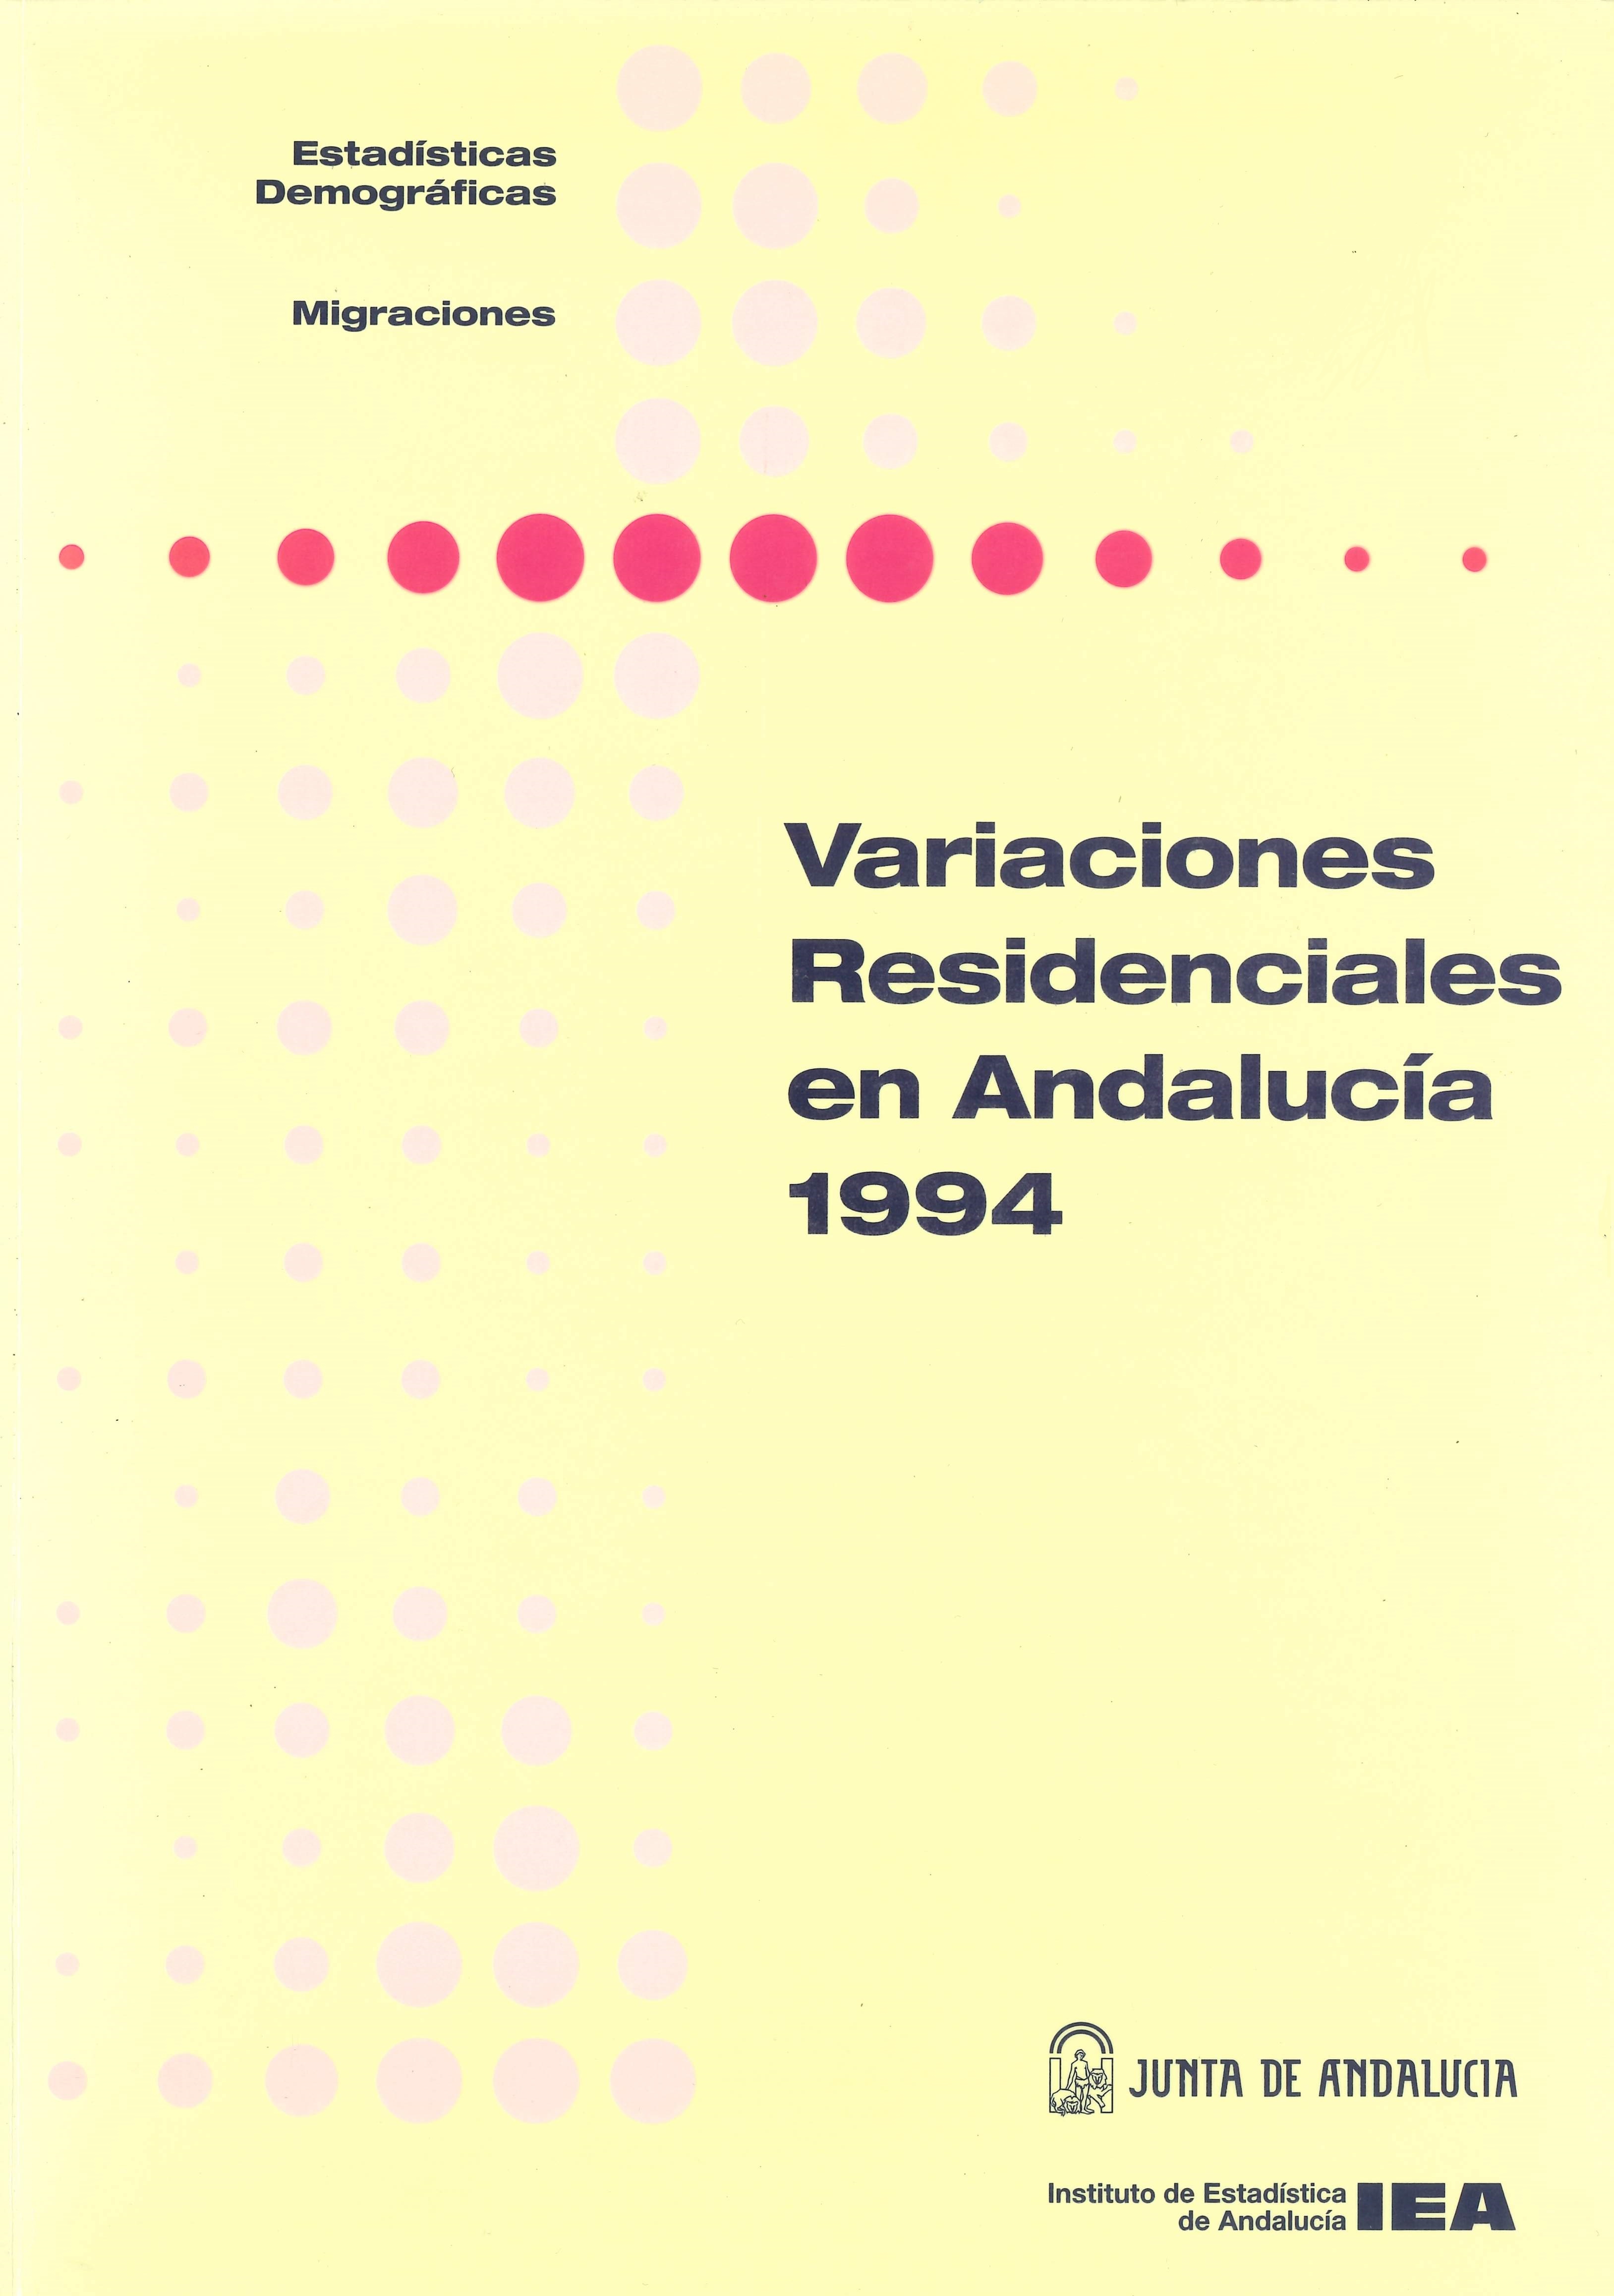 Imagen representativa de Variaciones residenciales en Andalucía 1994